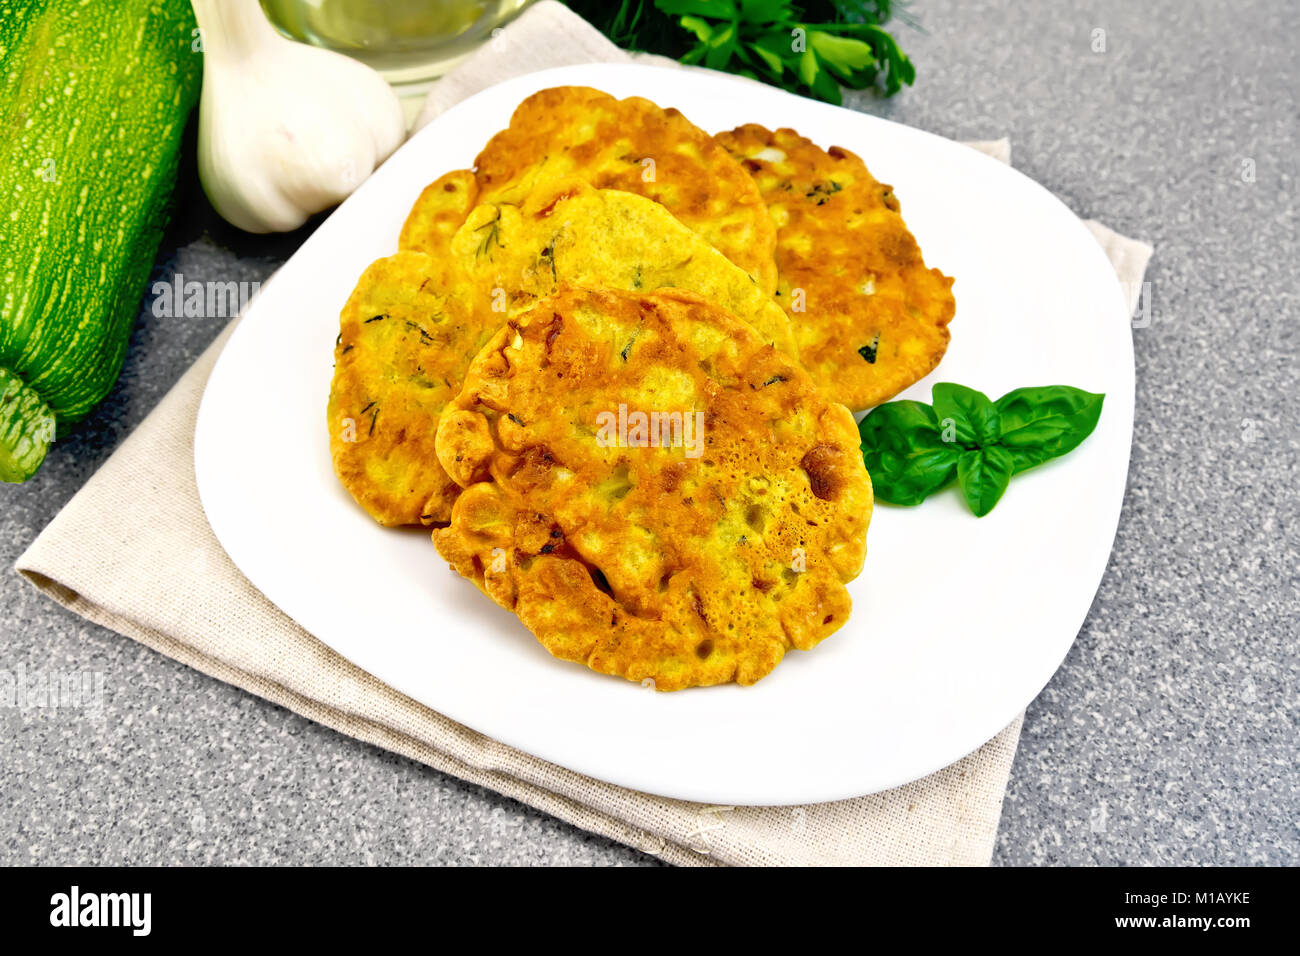 La farine de pois chiches indienne avec pain plats courgettes et herbes fraîches, basilic dans une assiette sur une serviette, l'ail et l'huile dans la carafe sur l'arrière-plan de la Banque D'Images